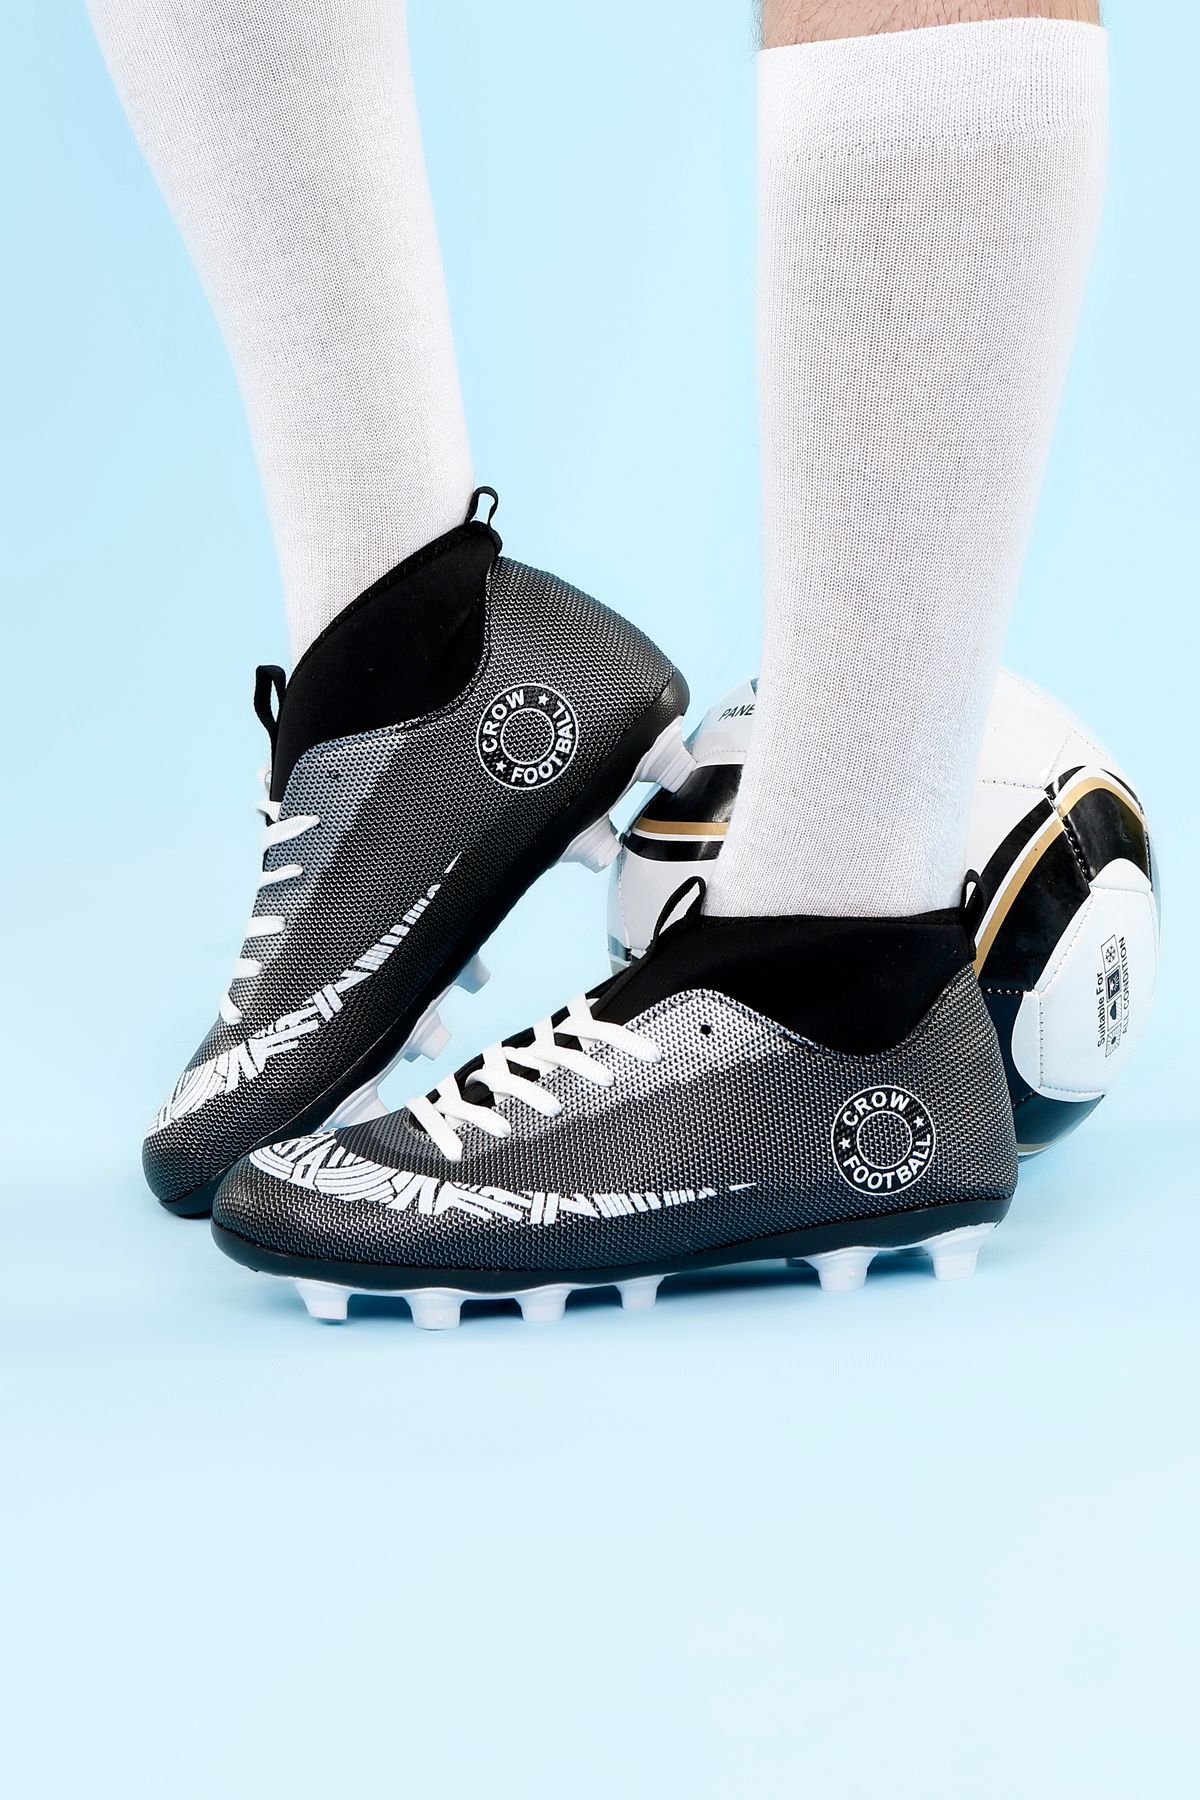 AYN-Shoes Siyah-Beyaz Super Mercury Bilekli Çoraplı Krampon Futbol Ayakkabısı